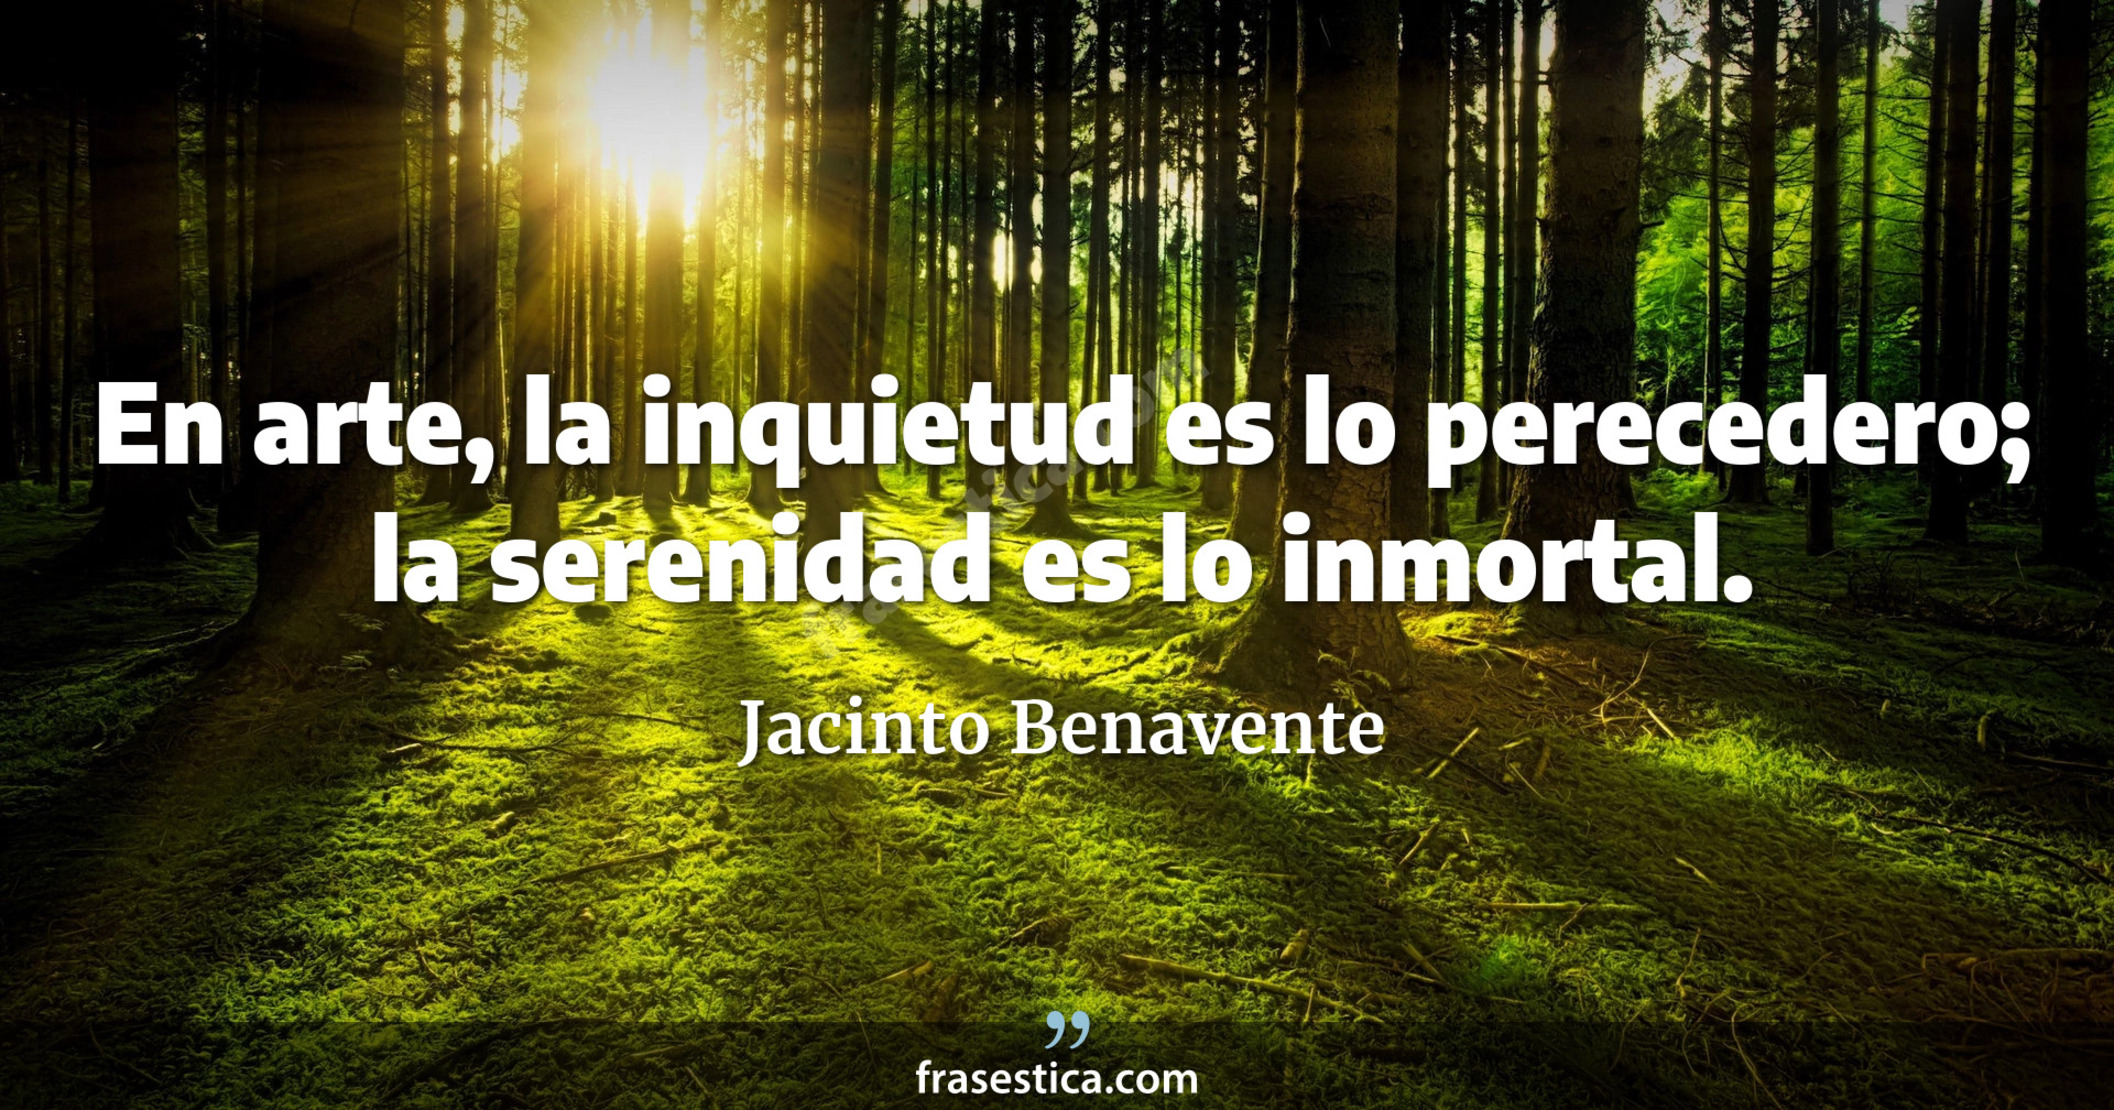 En arte, la inquietud es lo perecedero; la serenidad es lo inmortal. - Jacinto Benavente